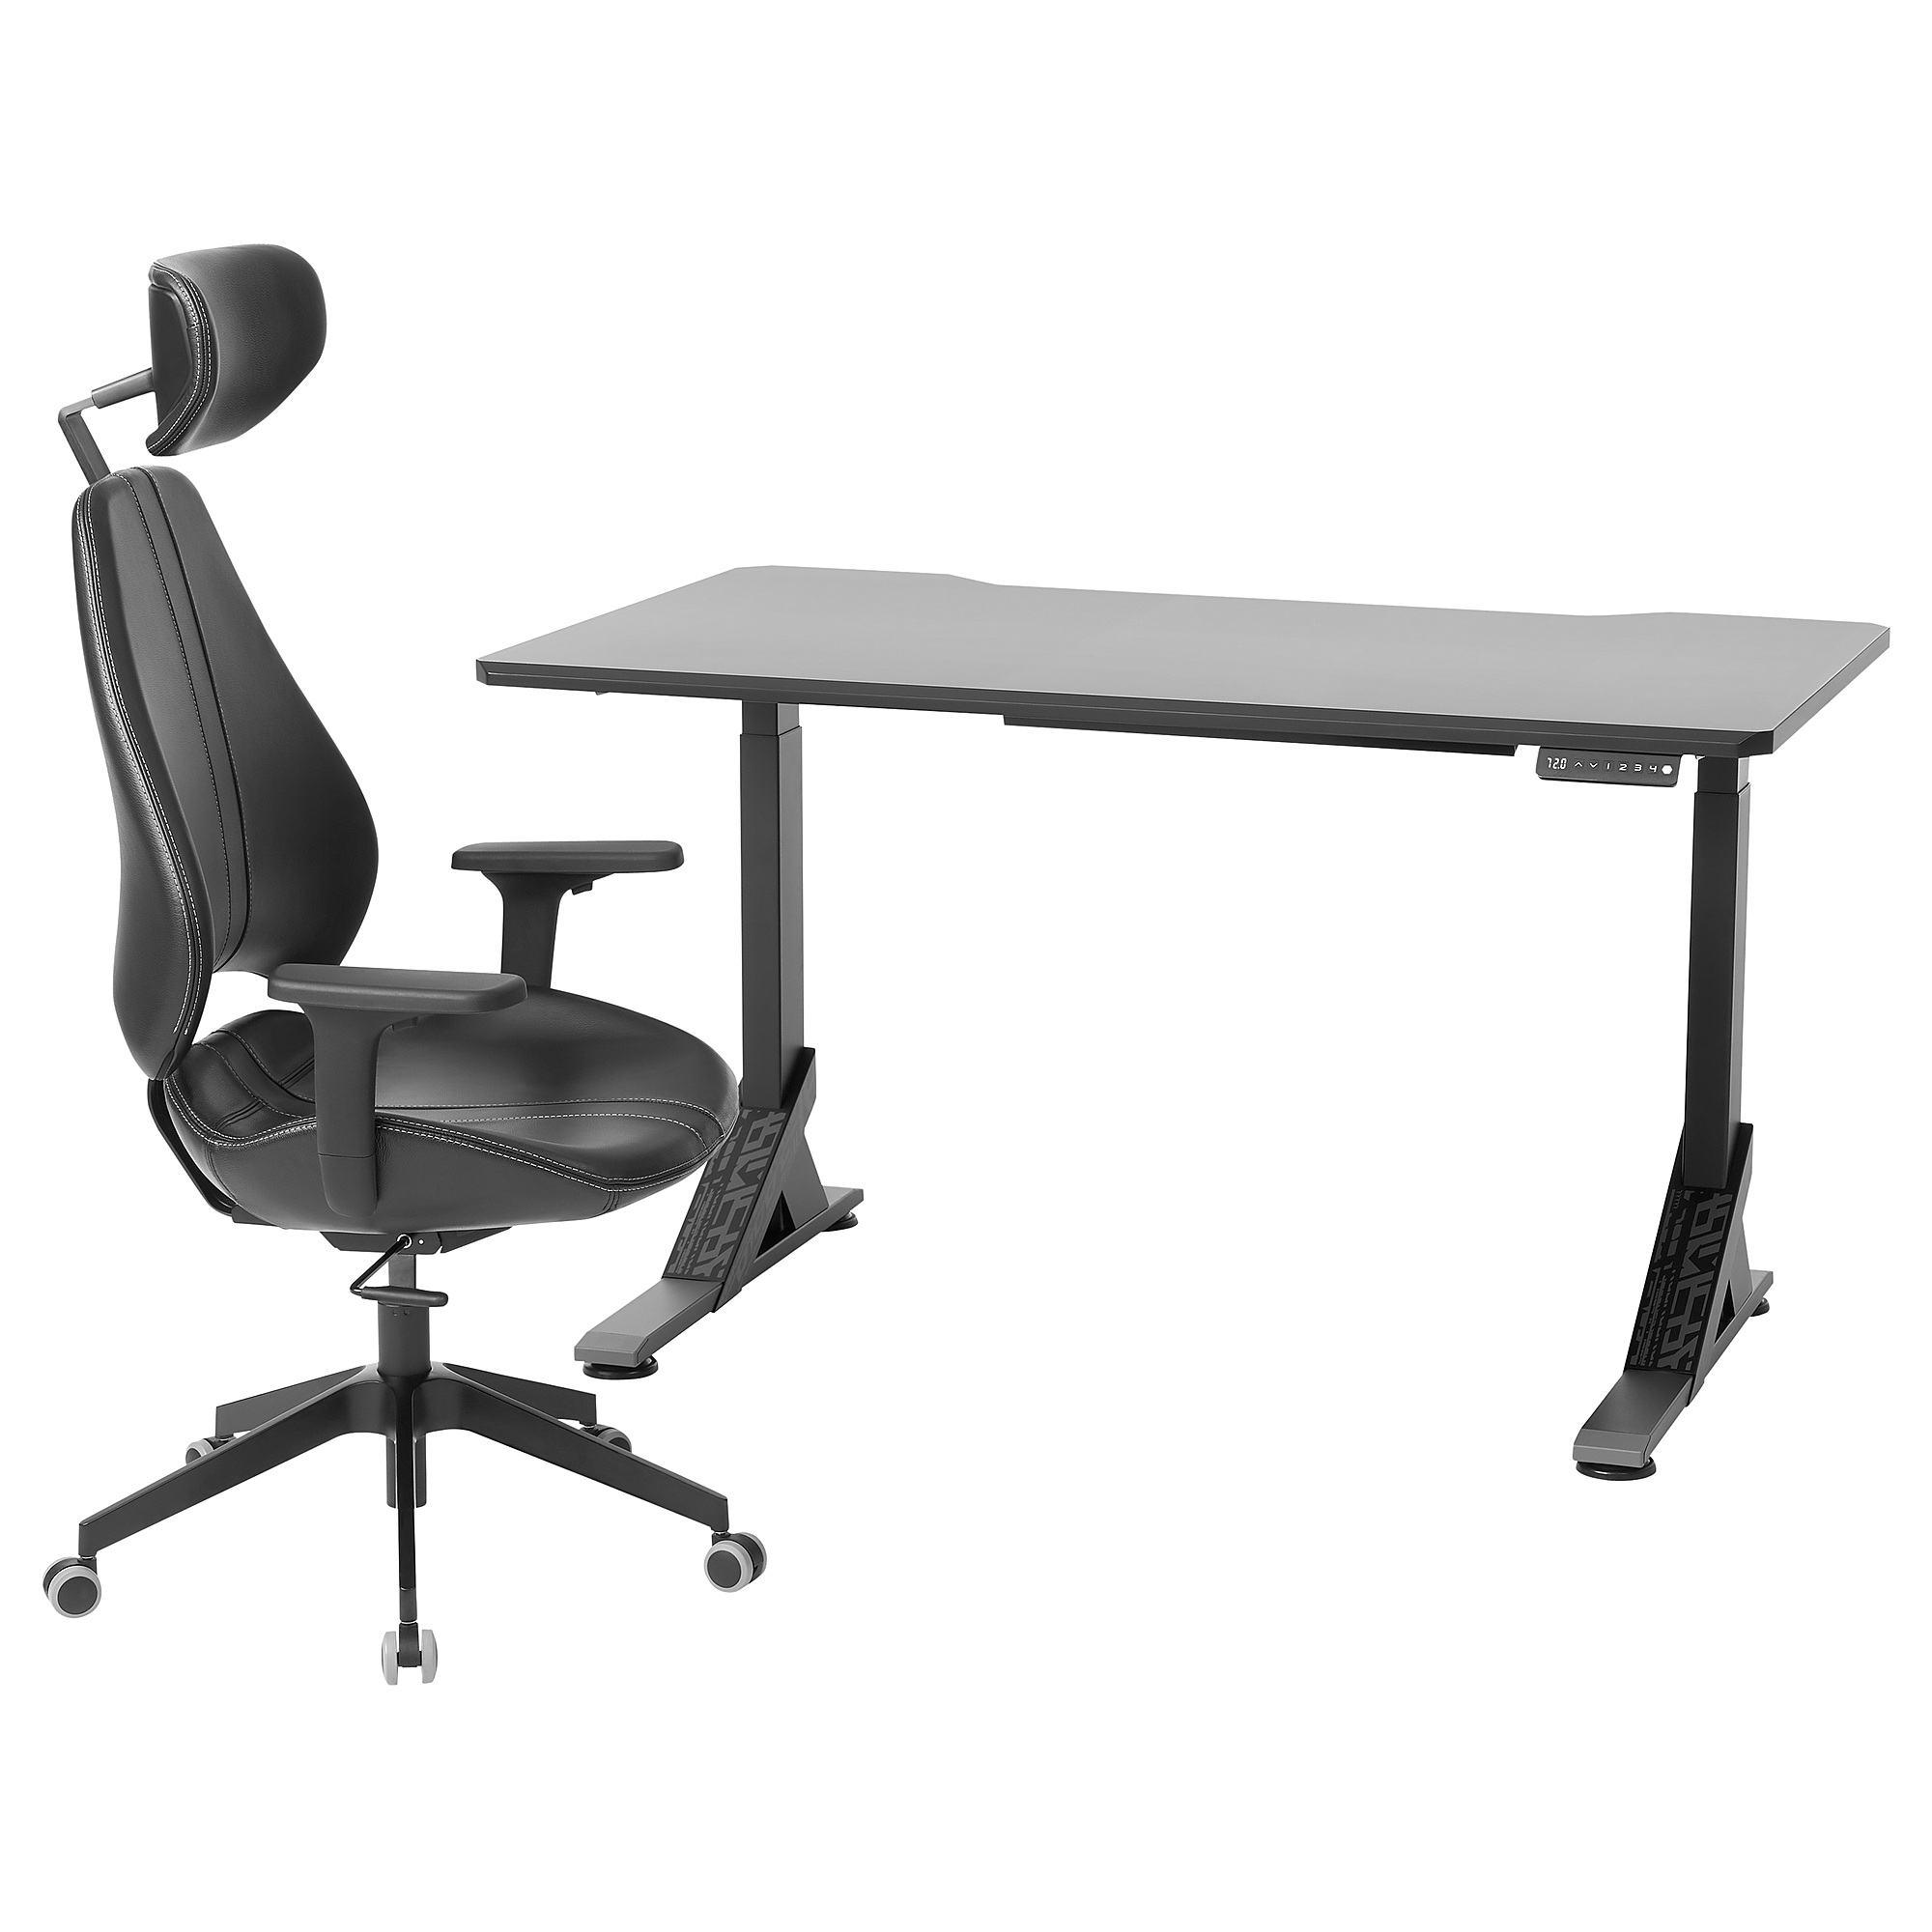 UPPSPEL/GRUPPSPEL gaming desk and chair